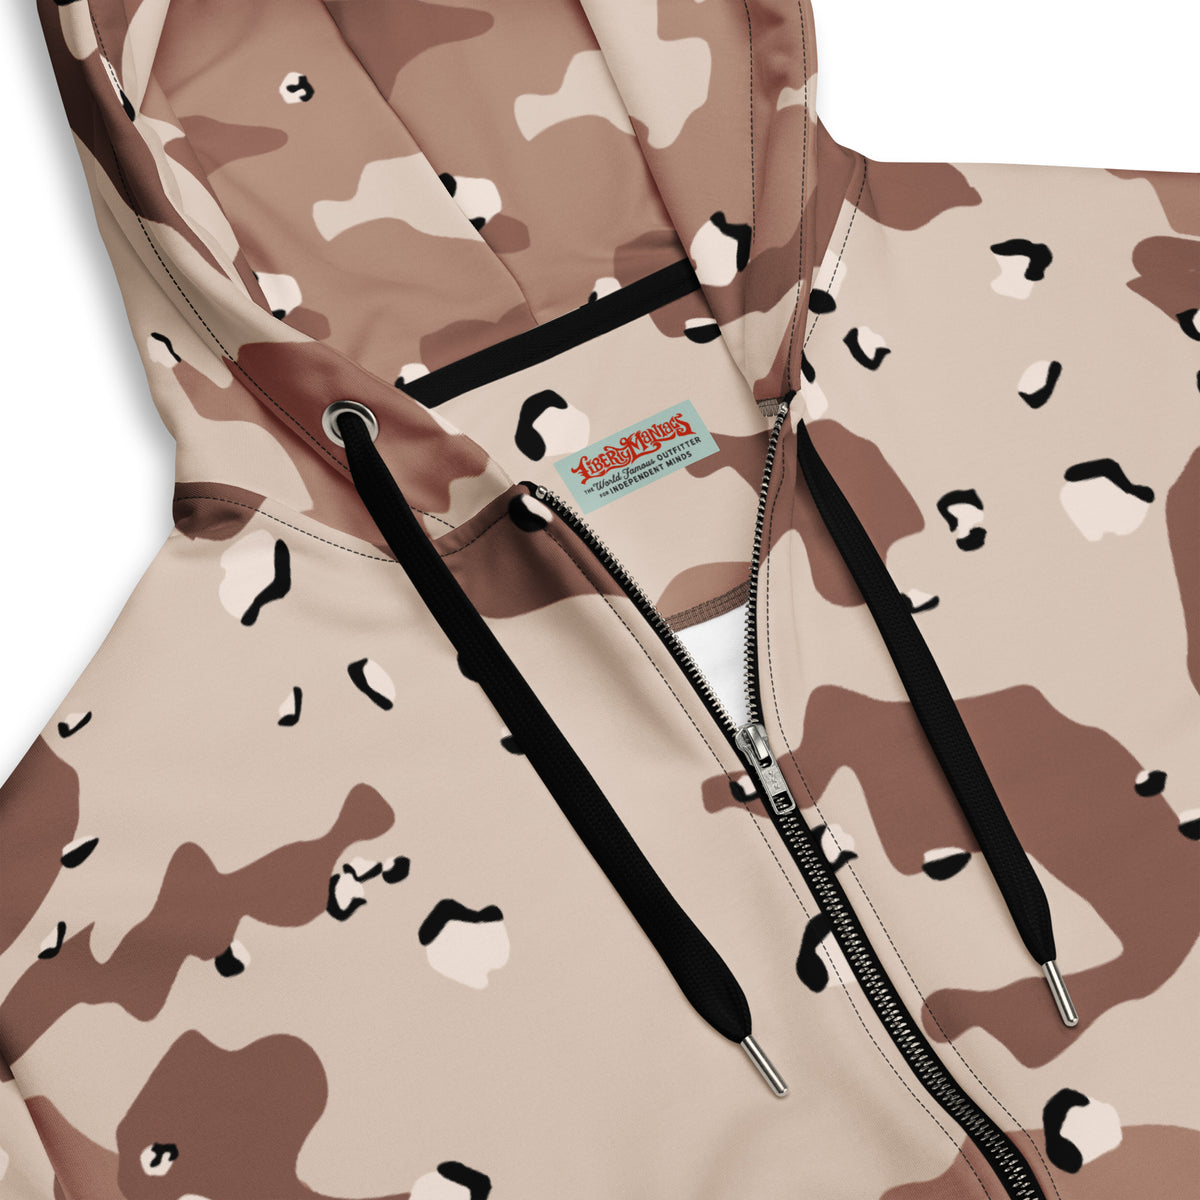 Desert Camouflage Pattern Brushed Fleece Hoodie Sweatshirt - Liberty Maniacs